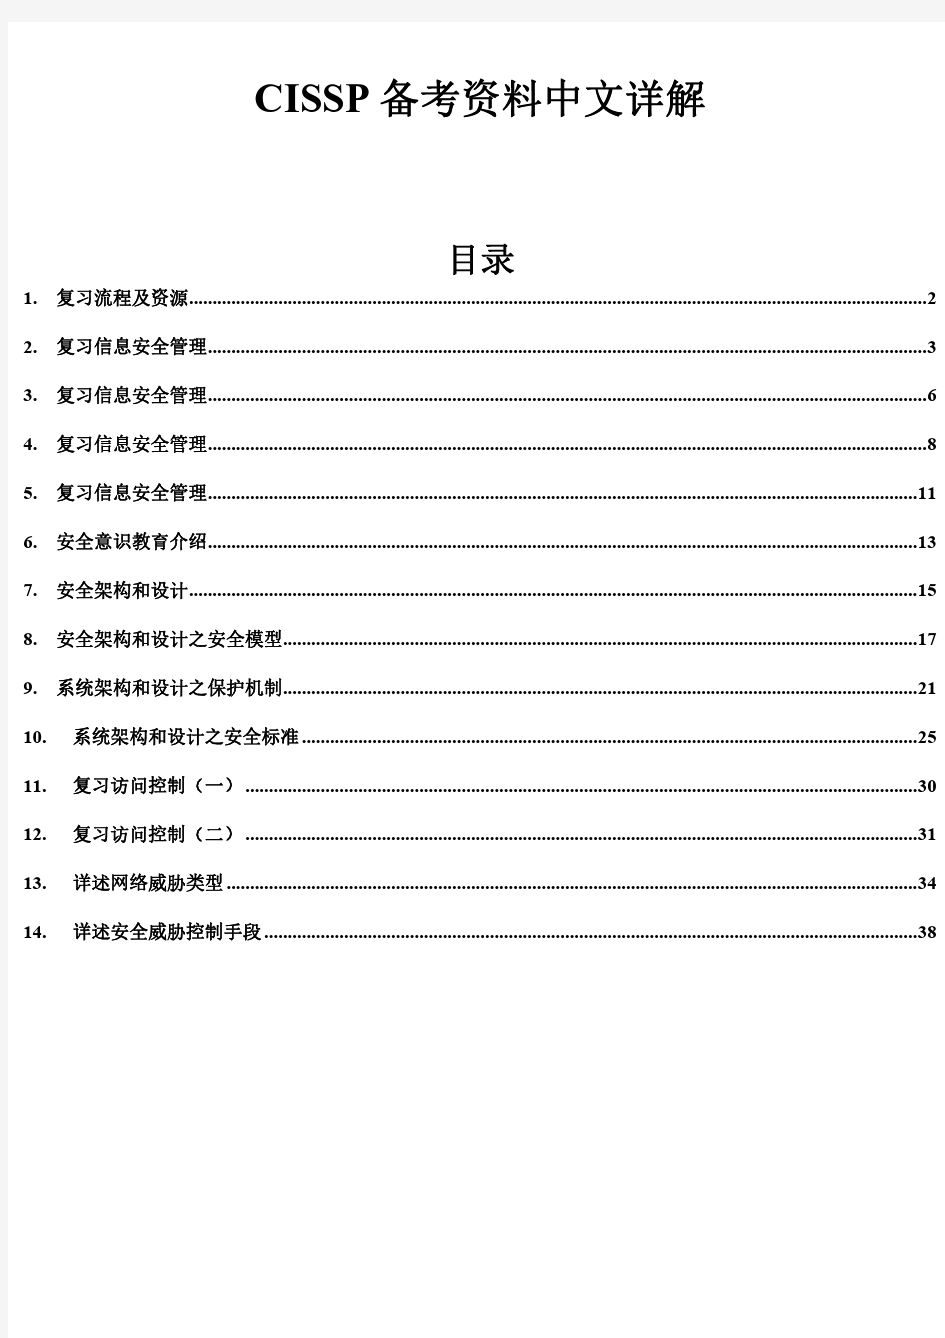 CISSP备考中文详解(超详细的中文备考资料)